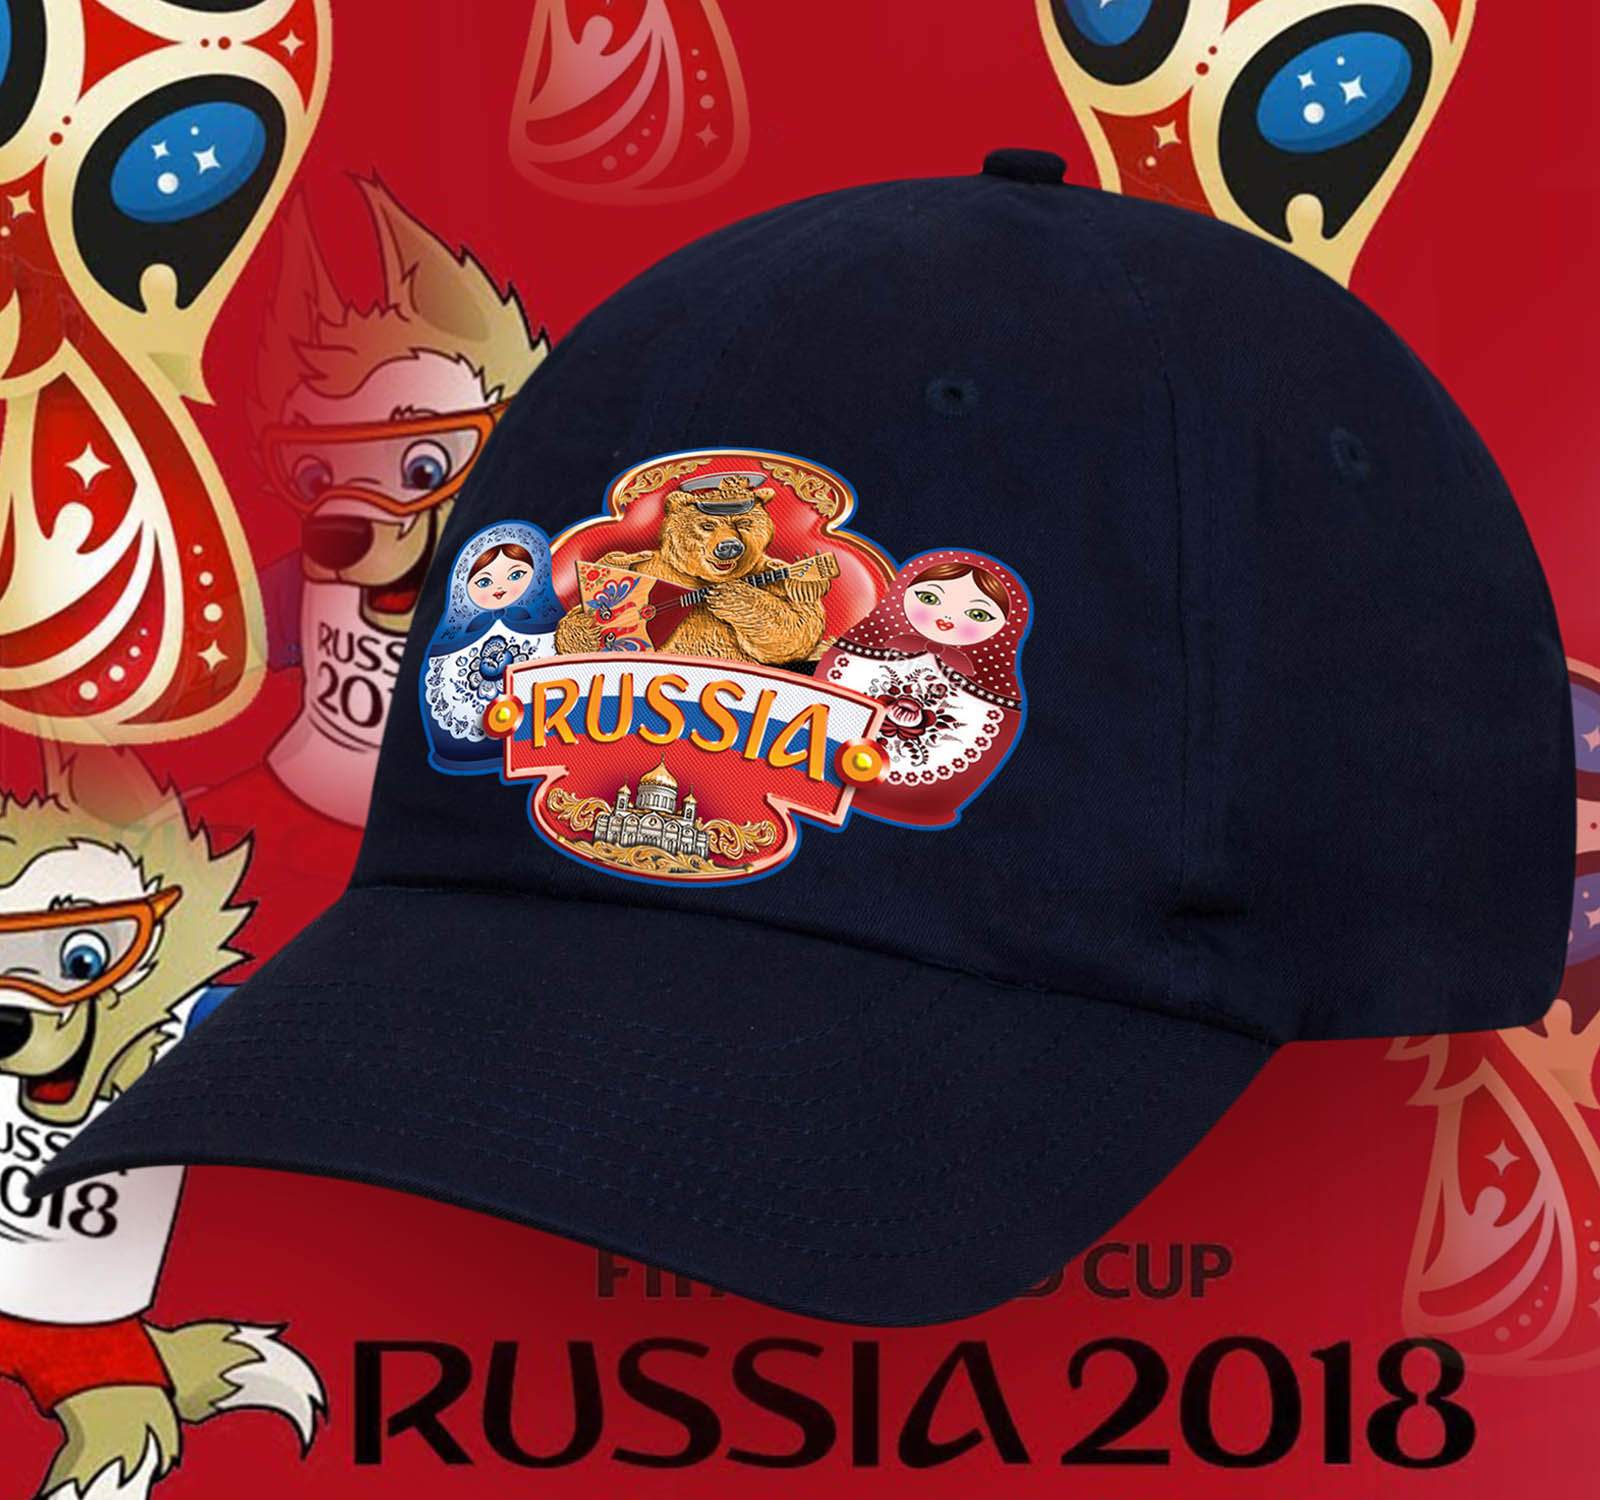 Заказать кепку для патриотов с эмблемой Мишка русская душа и Матрешки по демократической цене